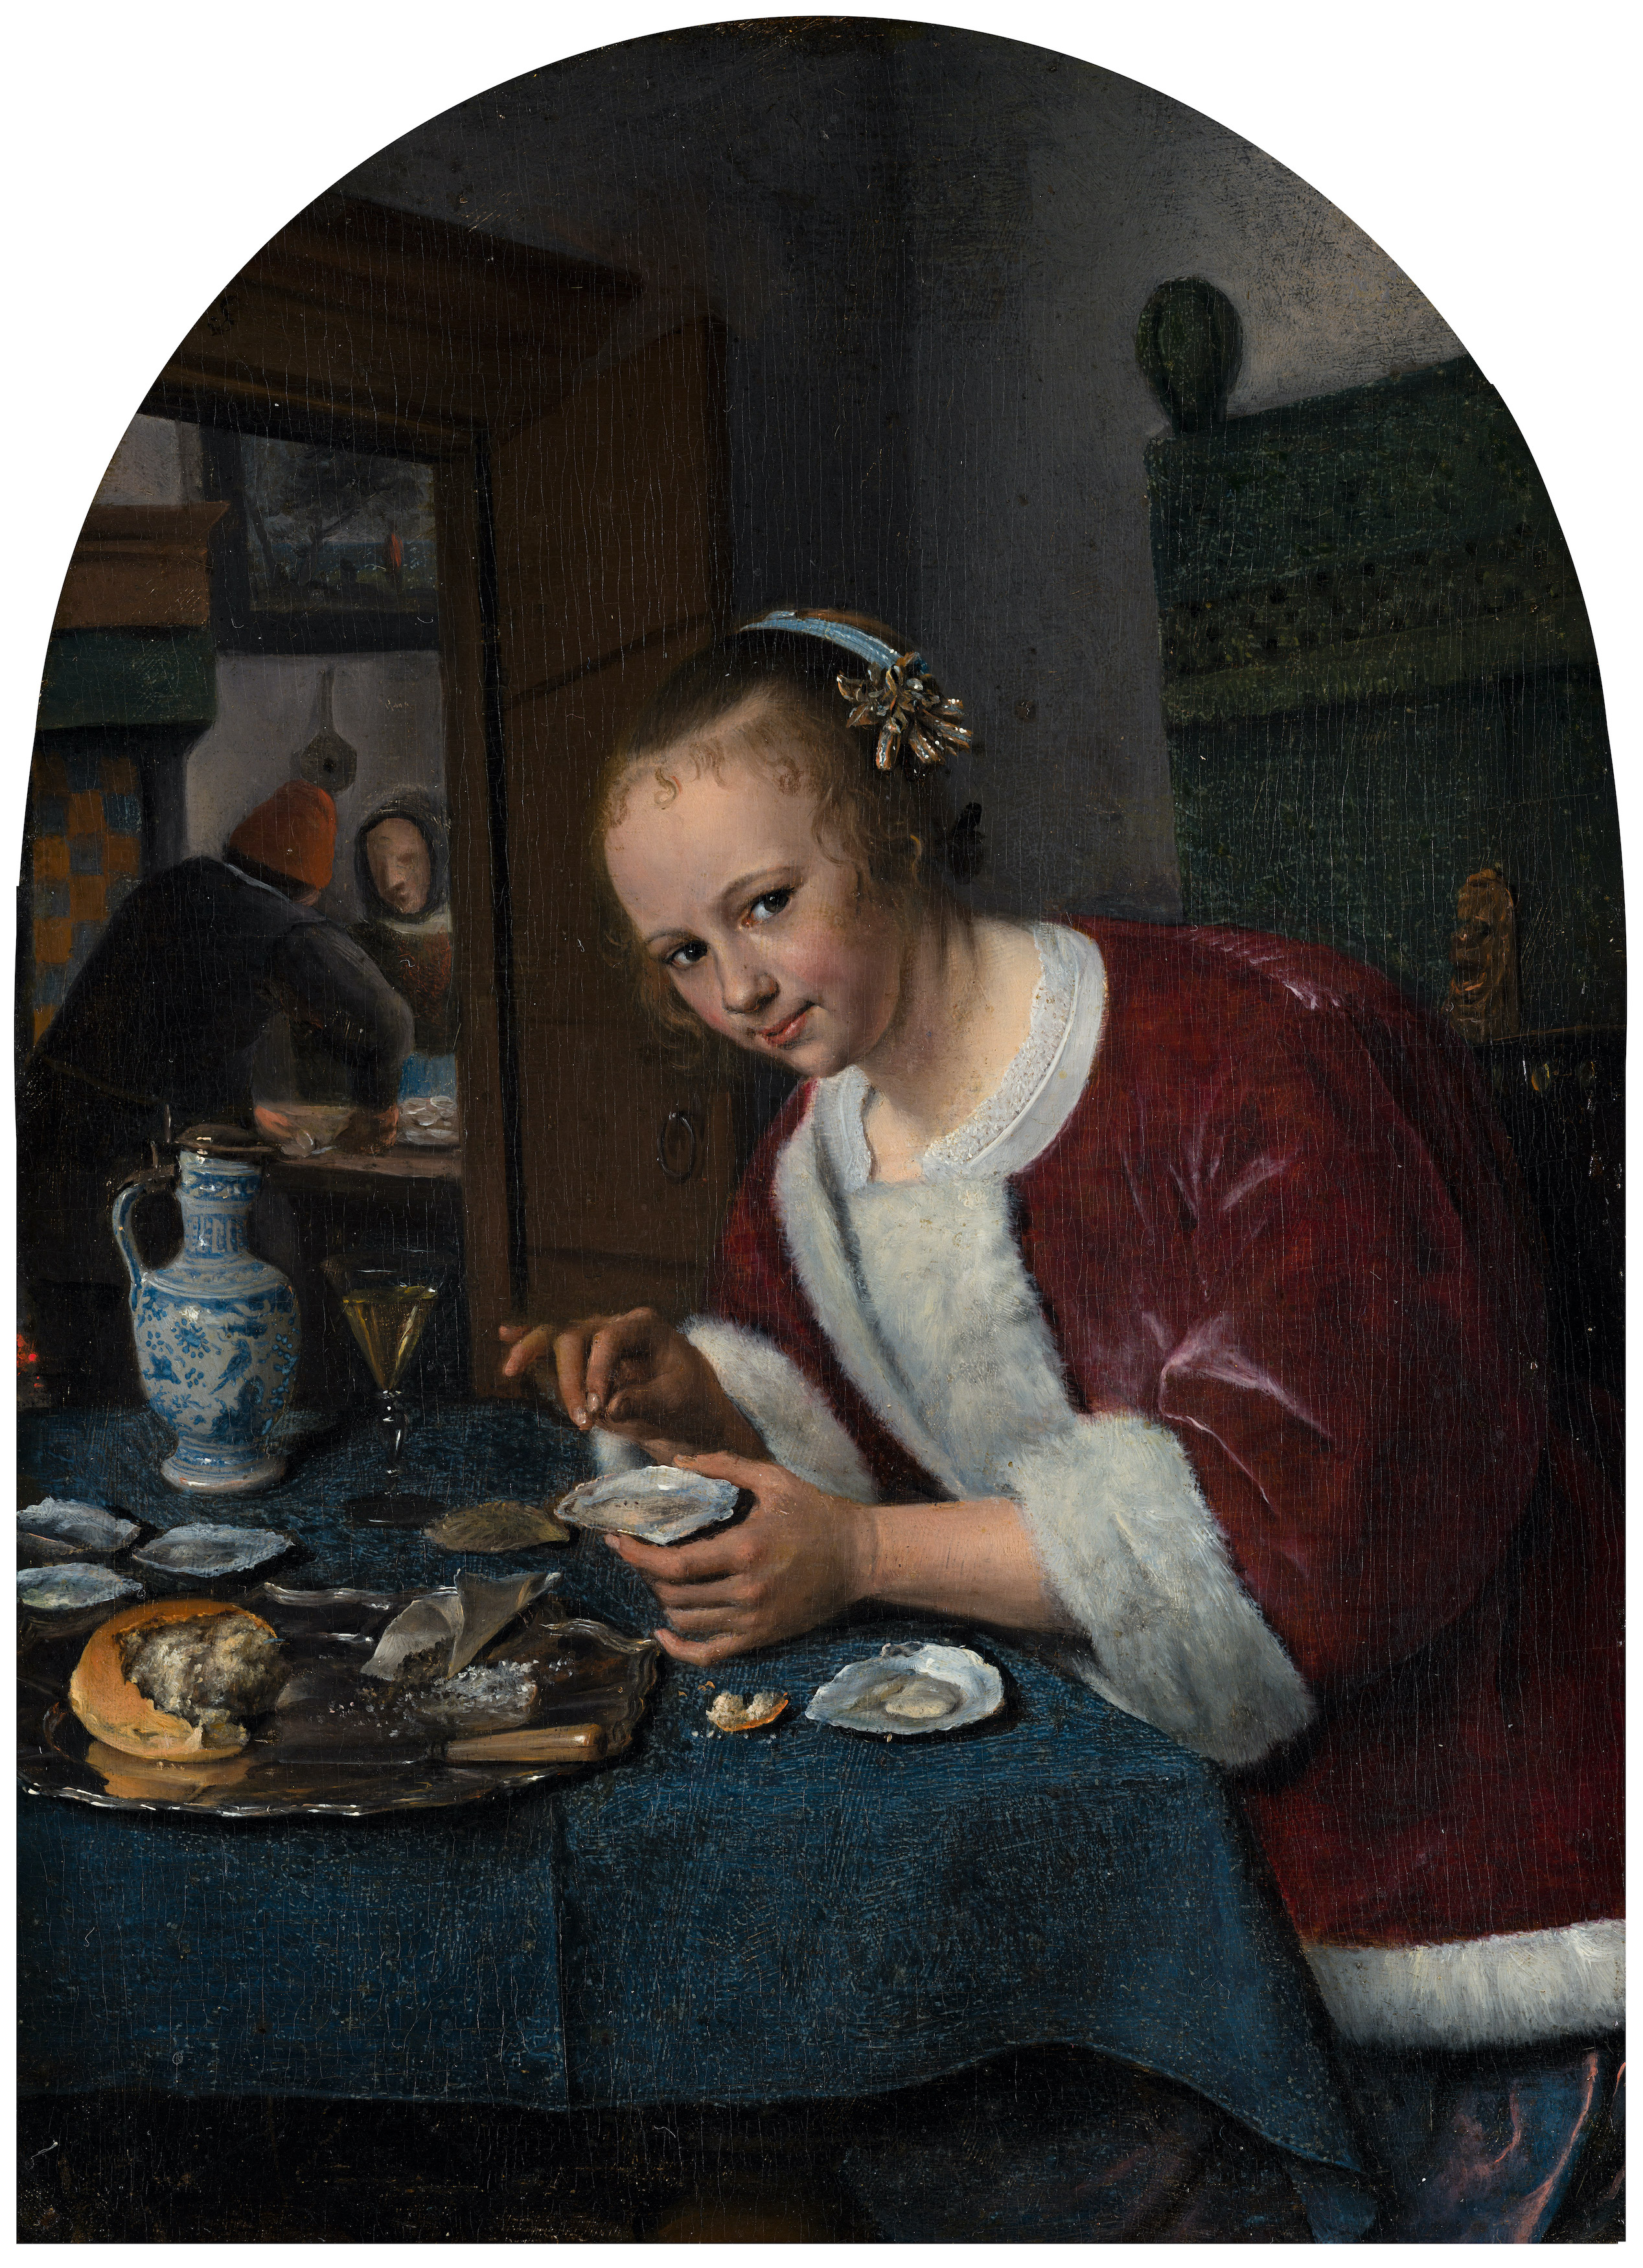 Dívka pojídajíc ústřice by Jan Steen - c. 1658 - 1660 - 20,4 x 15,1 cm 